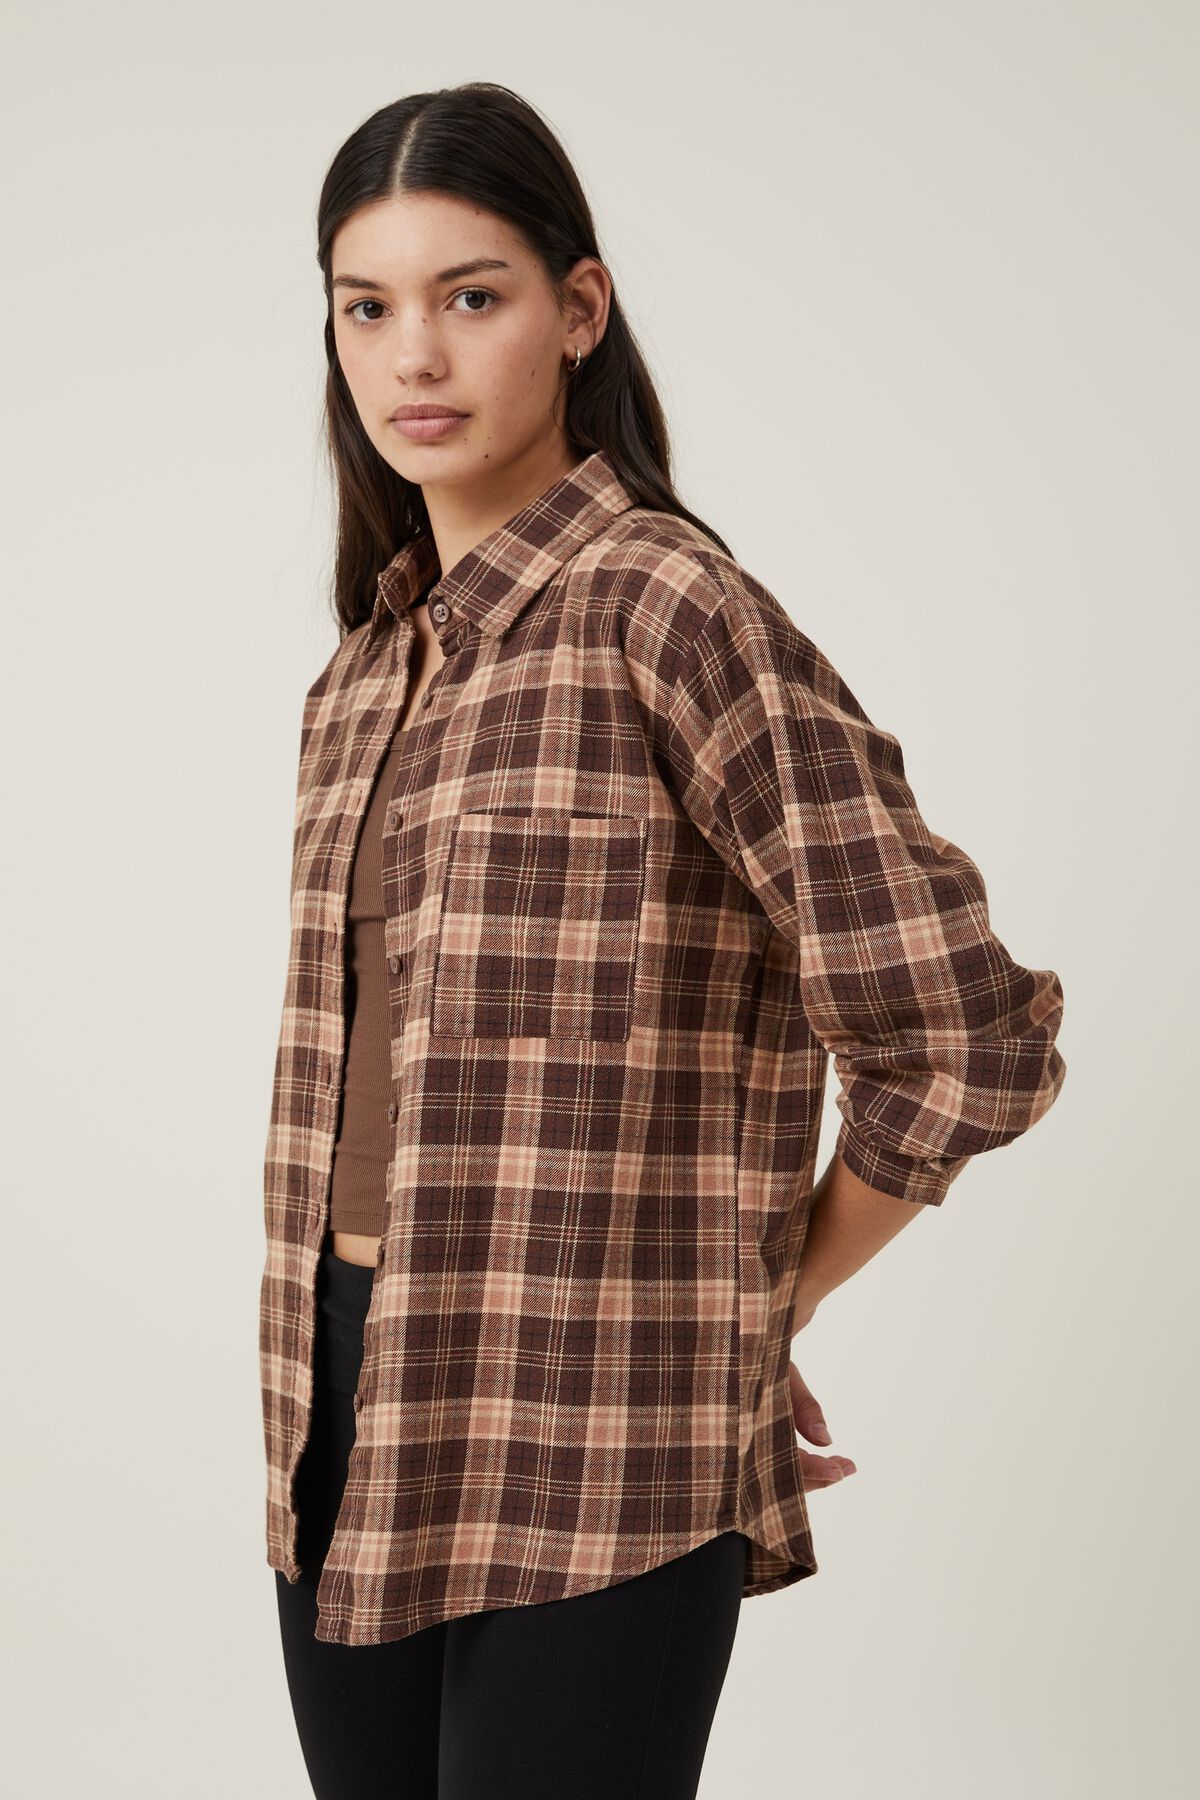 Boyfriend Flannel Shirt | Cotton On (US)